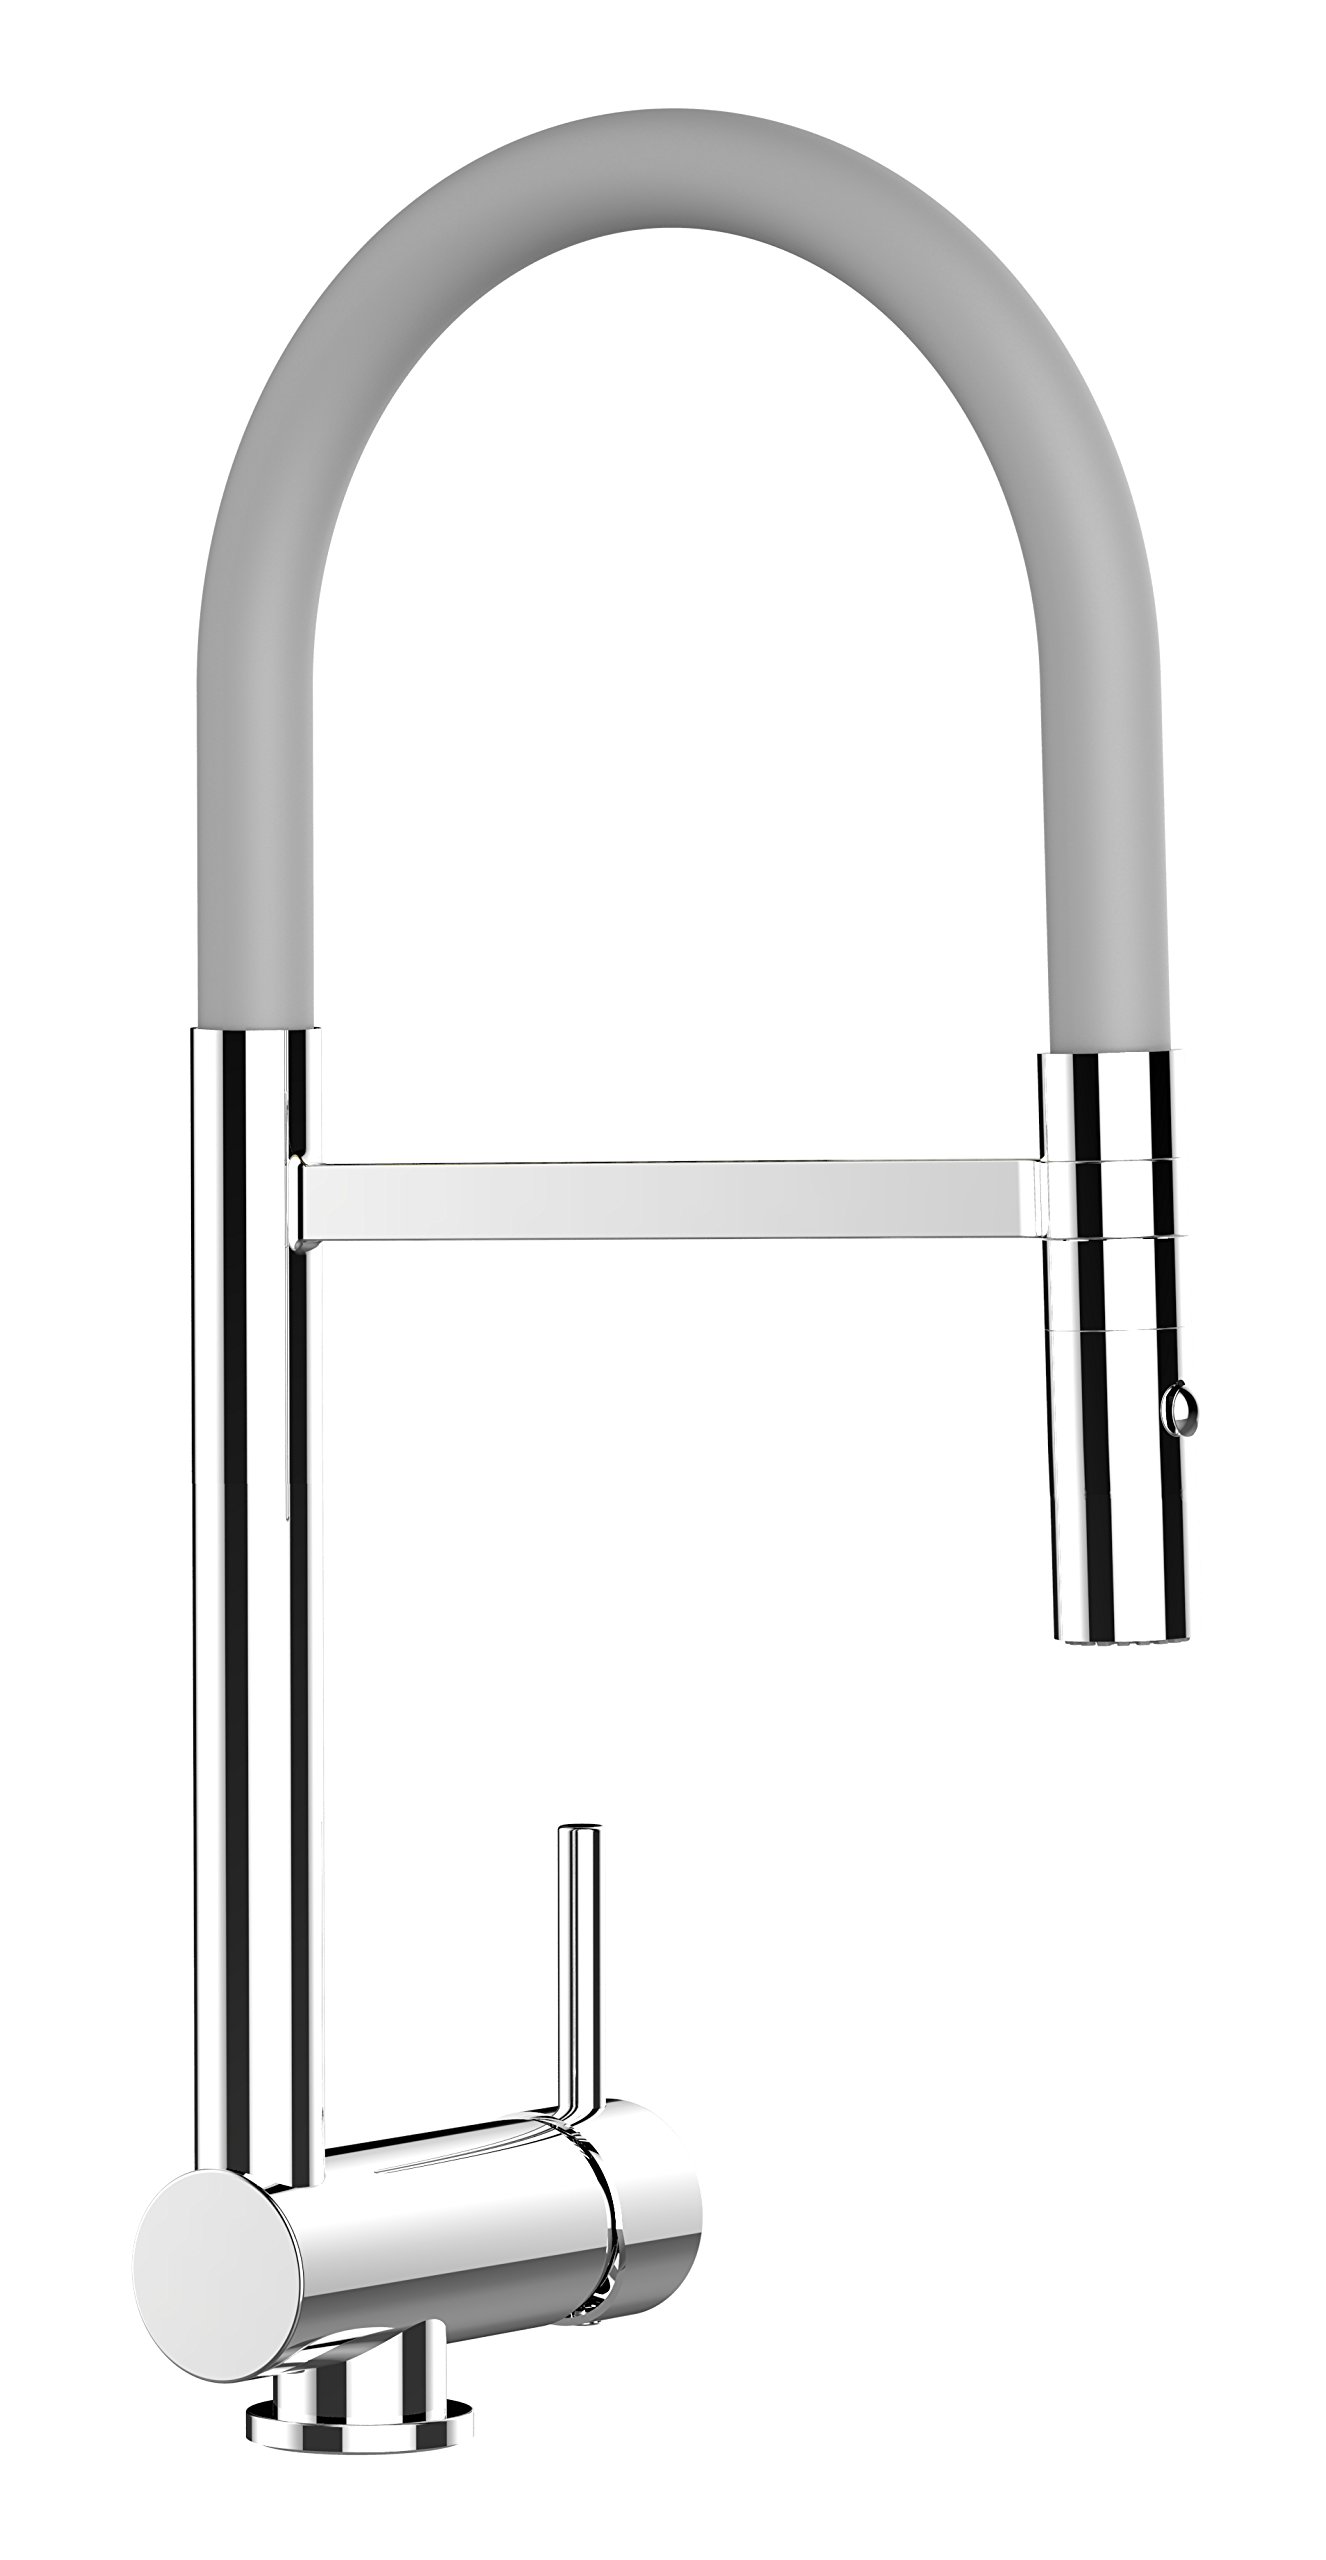 VIZIO NIEDERDRUCK Einhebel Küchenmischer Vorfenster 6cm Küchenarmatur mit 2 strahl Handbrause mit schwenkbarem Auslauf/CHROM/Profi/Design/Restaurant/Haus … (grau)